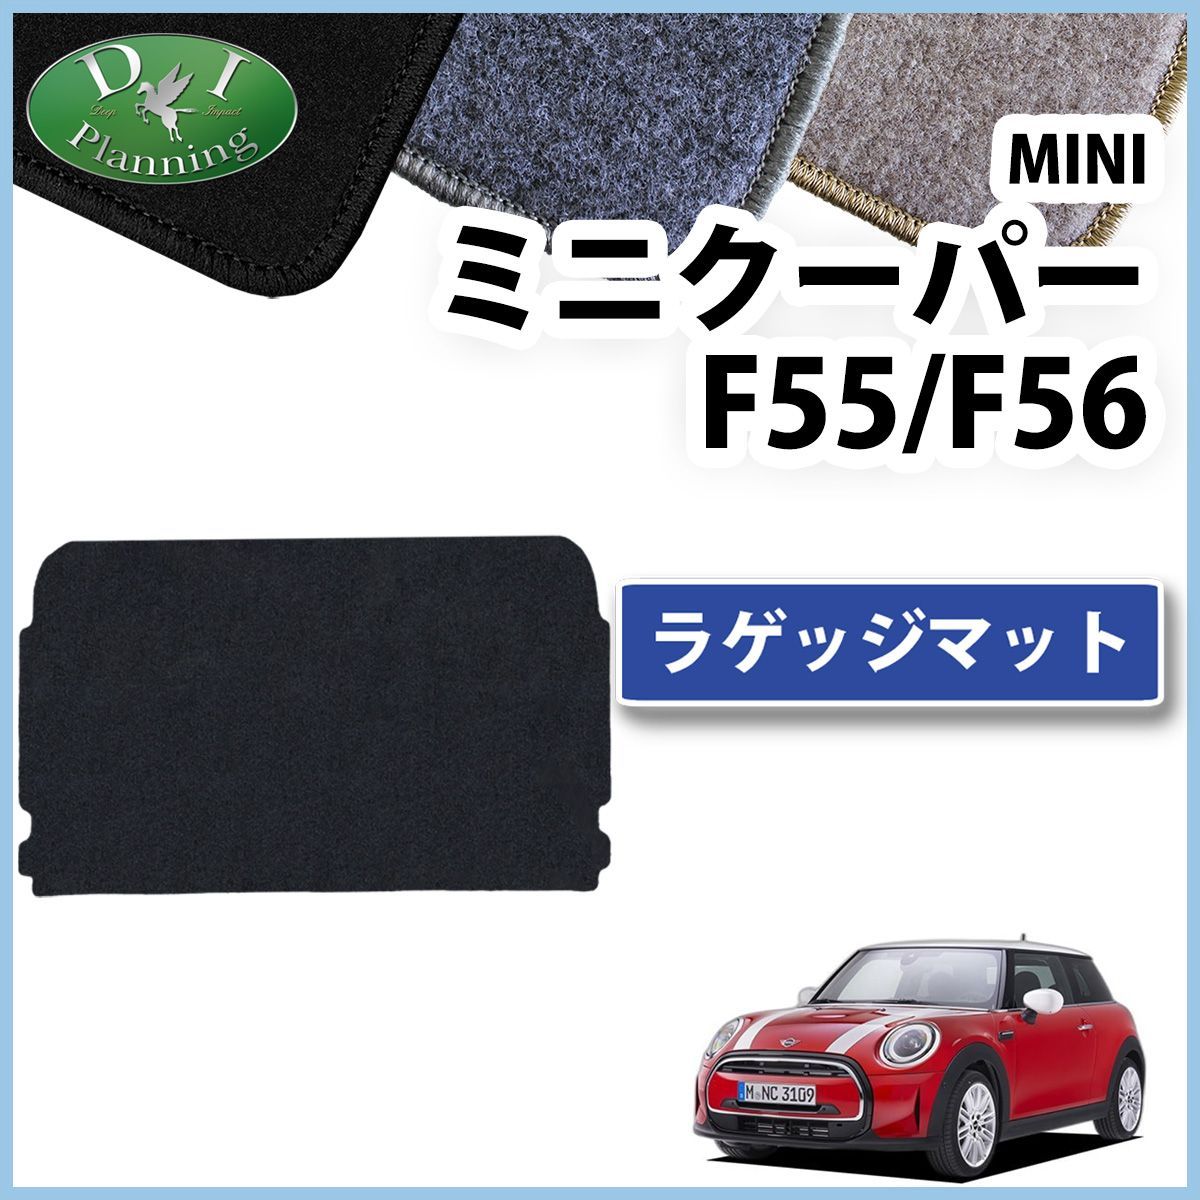 MINI ミニクーパー F55 5ドア車 ラゲッジマット トランクマット DXシリーズ 社外新品 カー用品のDIプランニング メルカリ